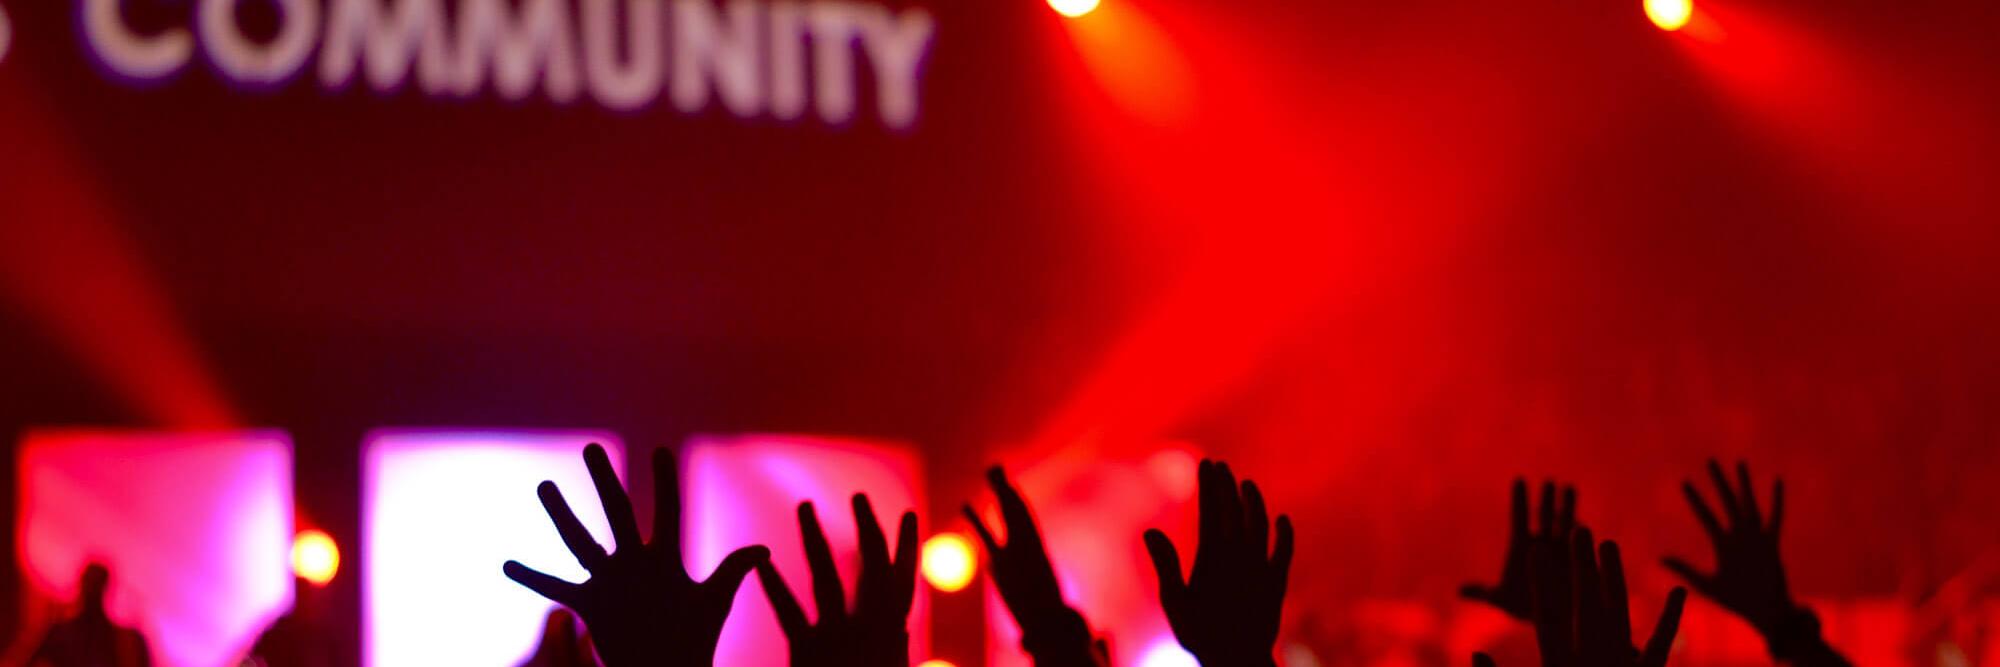 Man sieht die Hände einer feiernden Menschenmenge im rotem Licht. Das Wort 'Community' wird verschwommen an die Wand darüber projiziert.